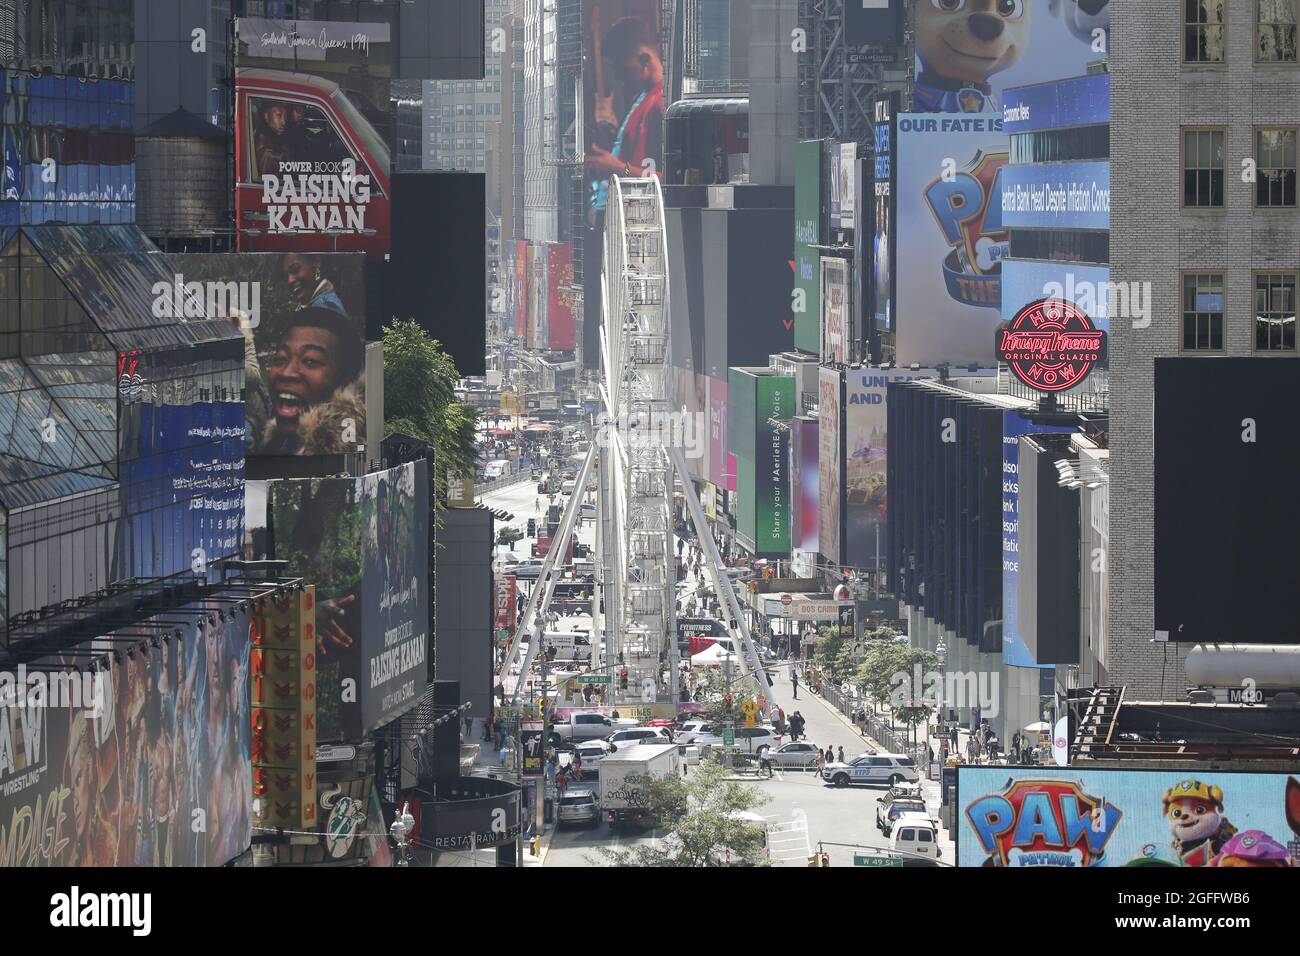 New York, Stati Uniti. 25 ago 2021. Una ruota panoramica a tempo limitato apre a Times Square e offre ai turisti e ai residenti una nuova vista della città di New York il mercoledì 25 agosto 2021. La corsa alta 110 piedi è in funzione dal 25 agosto al 12 settembre. Foto di John Angelillo/UPI Credit: UPI/Alamy Live News Foto Stock